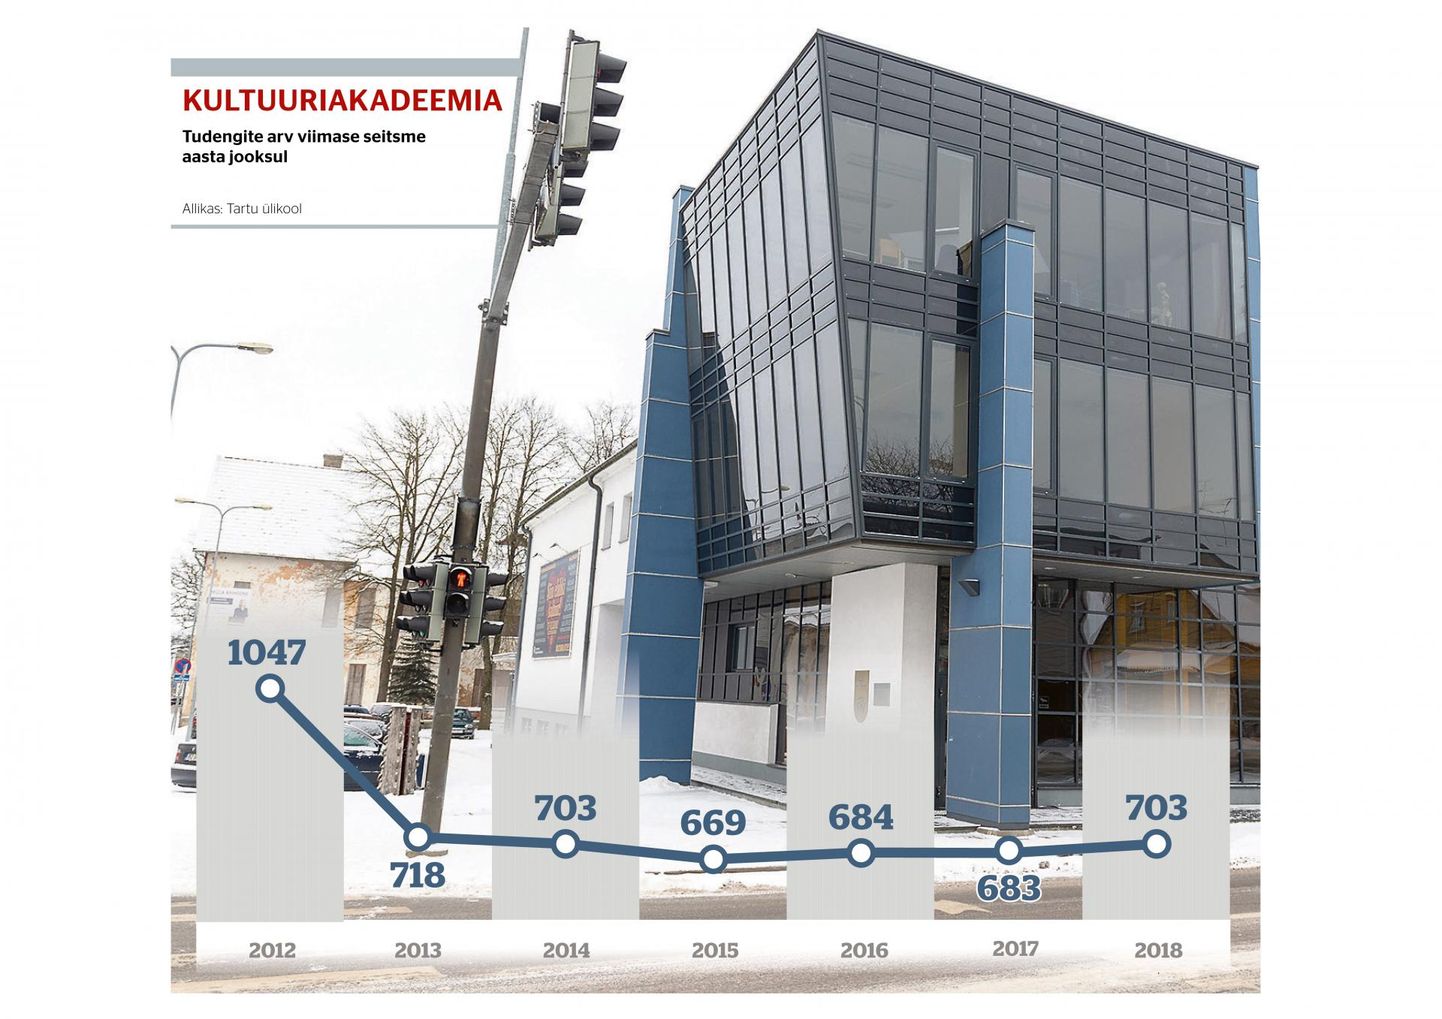 Tartu ülikool on välja arvutanud, et majanduslikuks toimetulekuks vajaks kultuuriakadeemia 100 000 eurot.